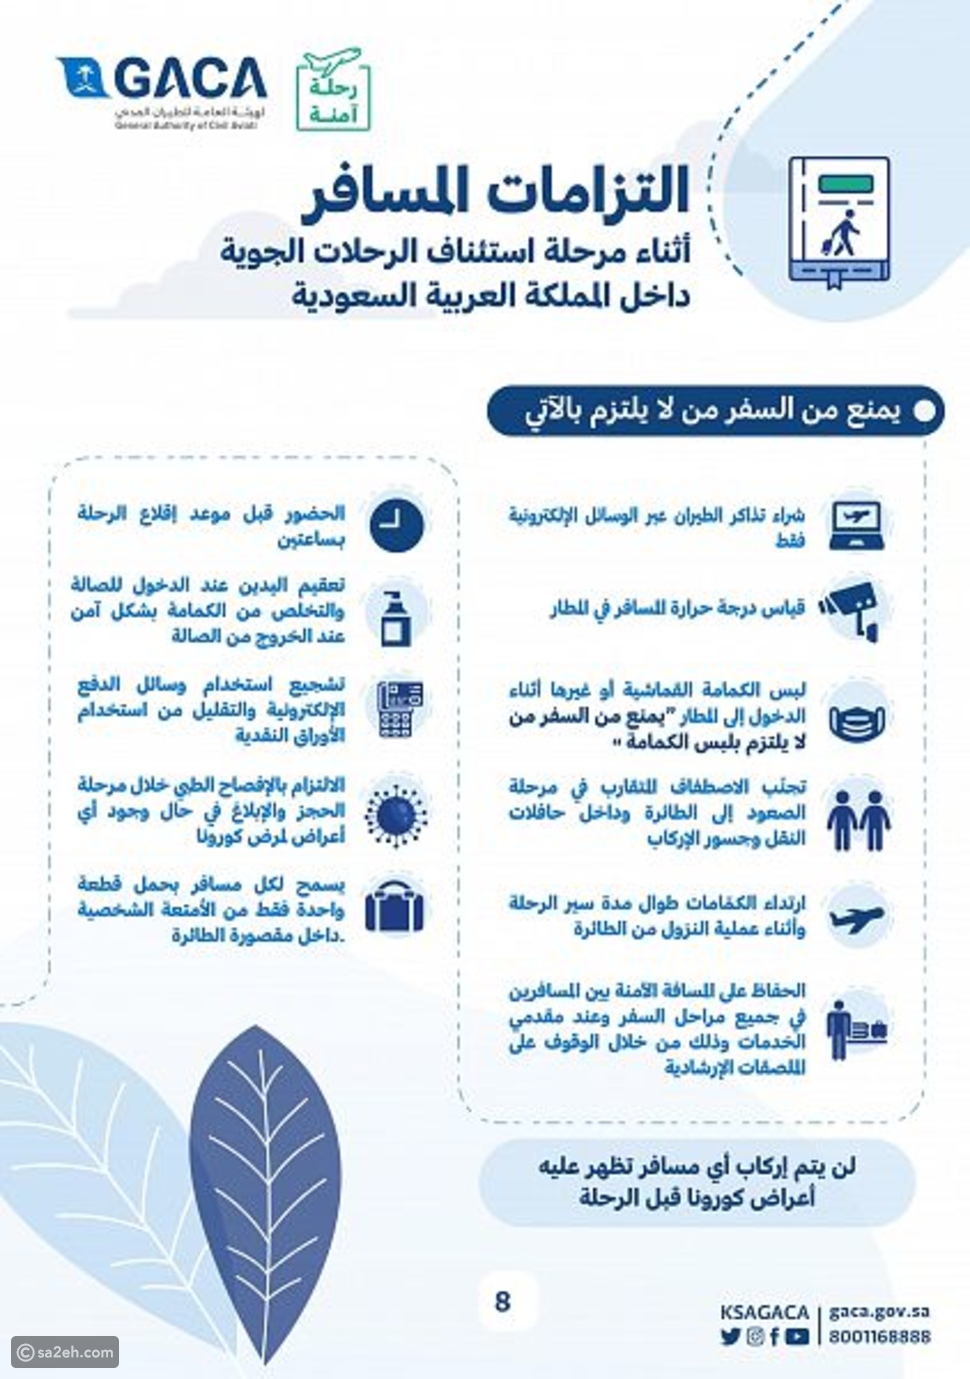 منع السفر بدون كمامة والإفصاح الصحي: دليل إرشادي للمسافرين في السعودية